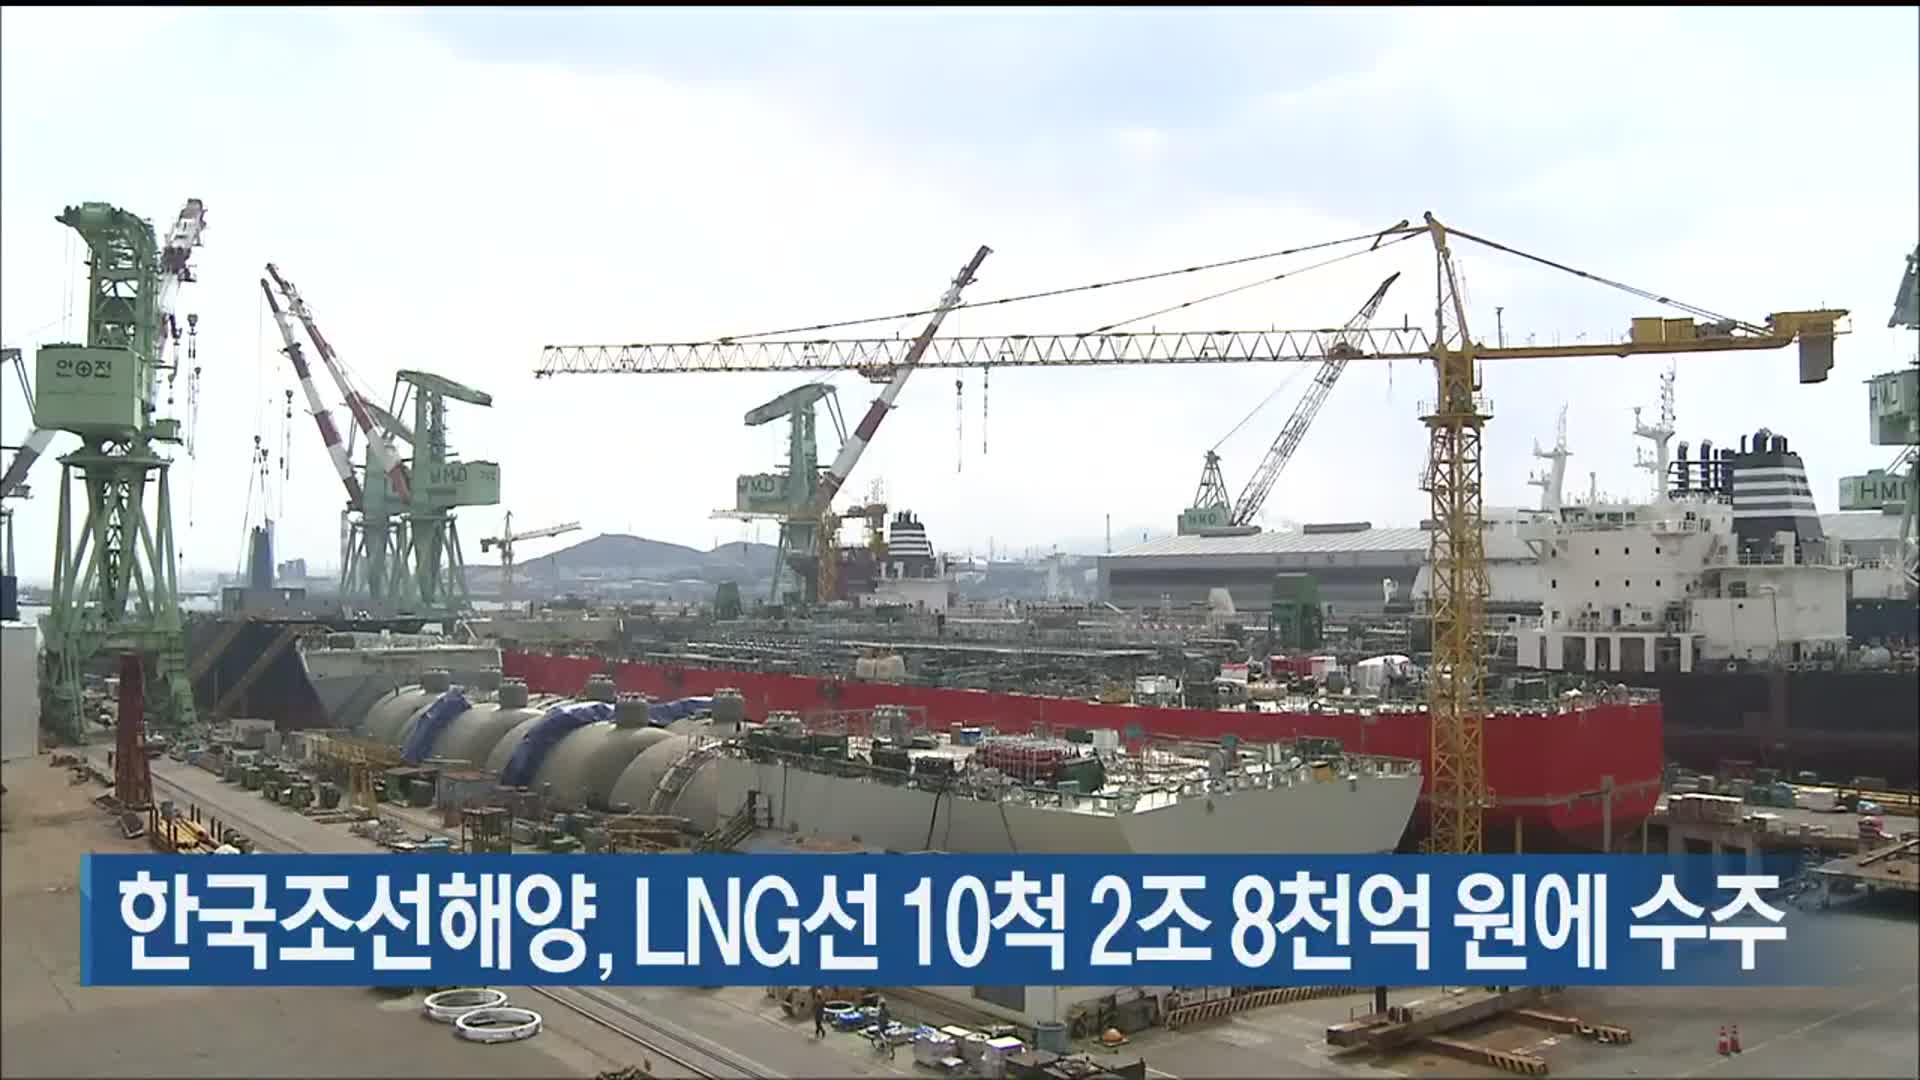 한국조선해양, LNG선 10척 2조 8천억 원에 수주